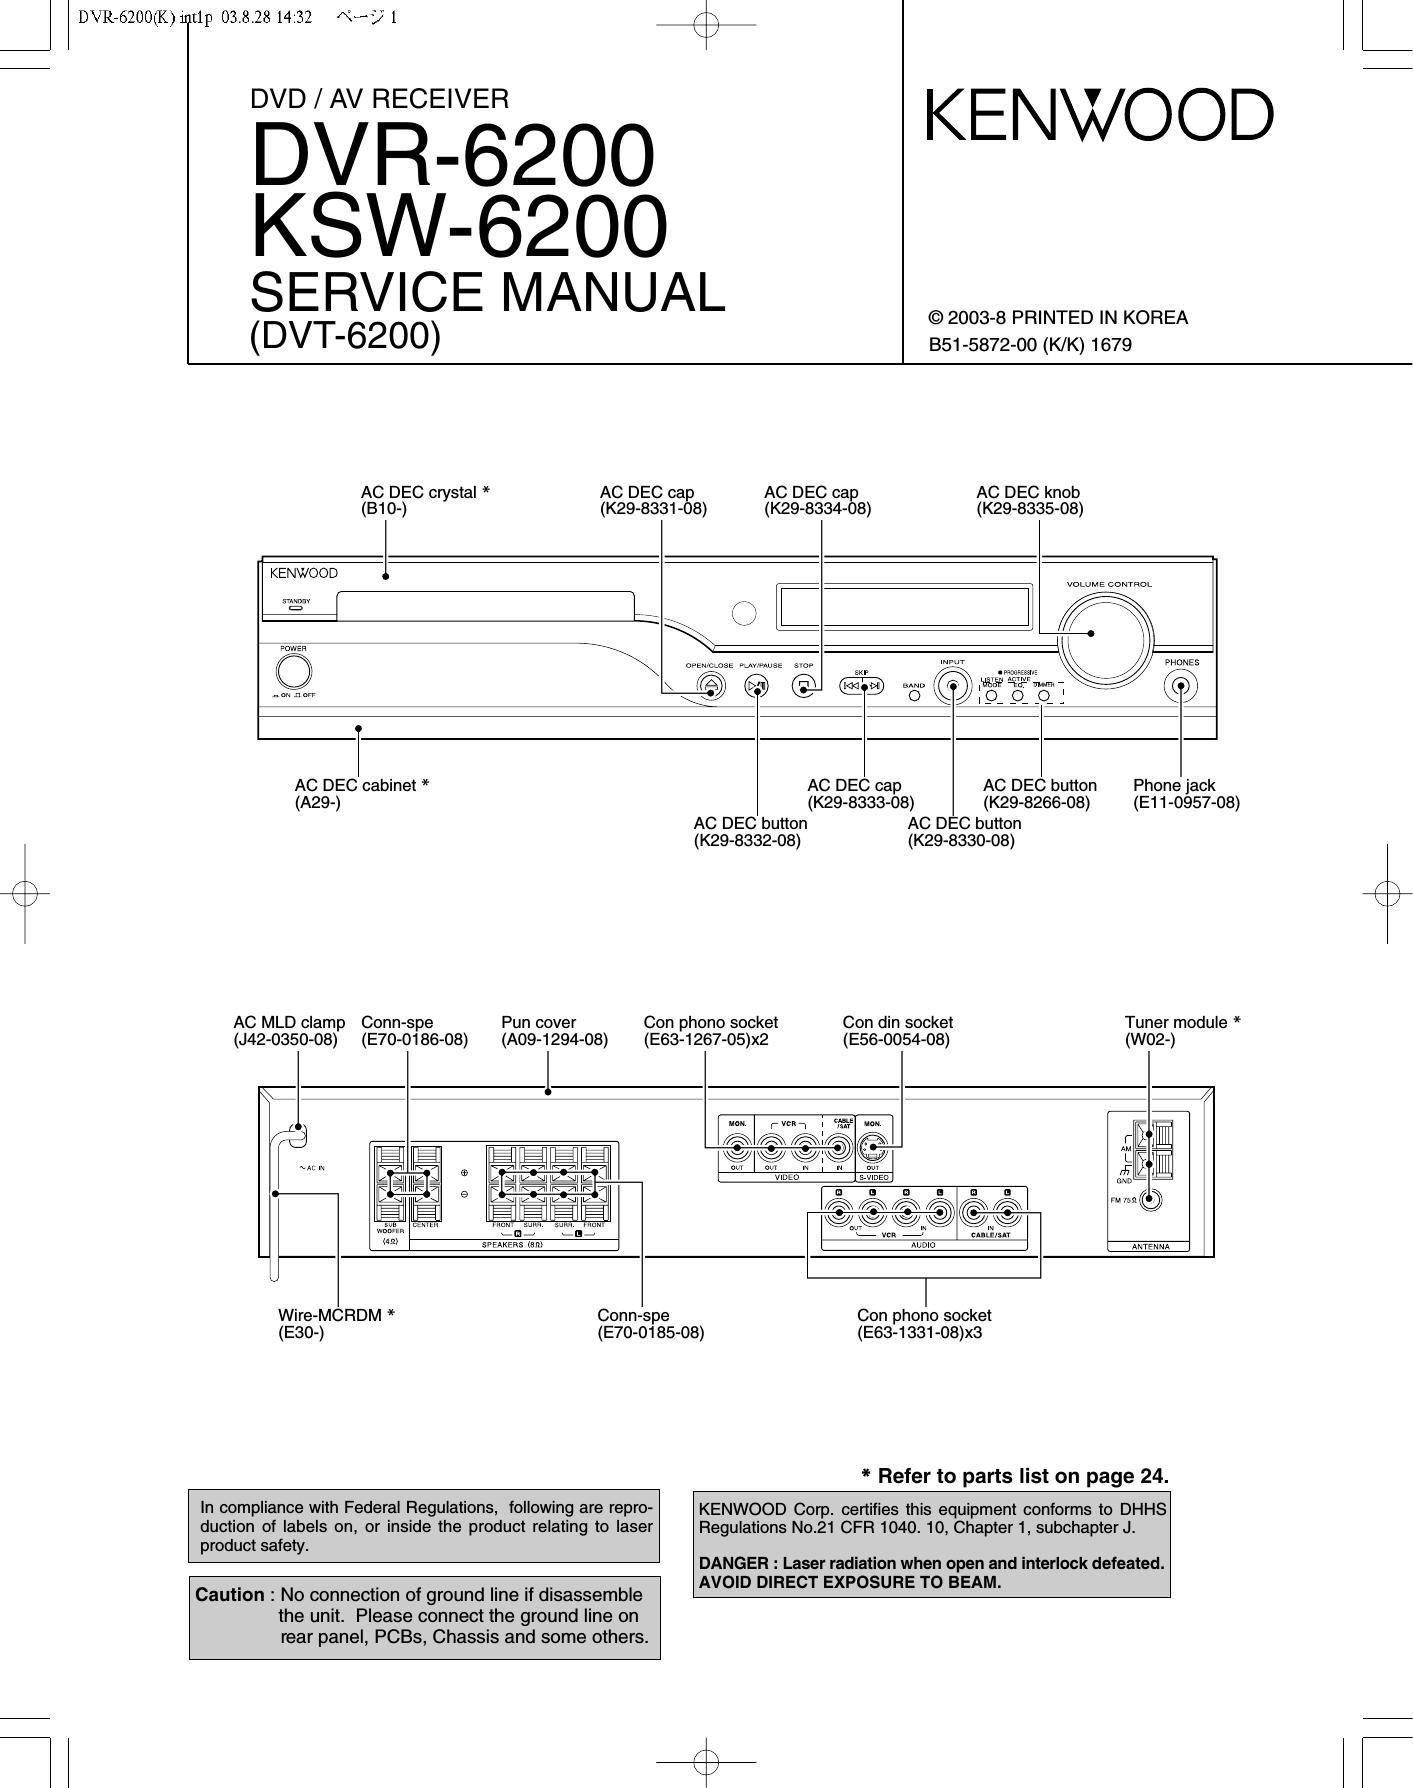 Kenwood DVR 6200 Service Manual